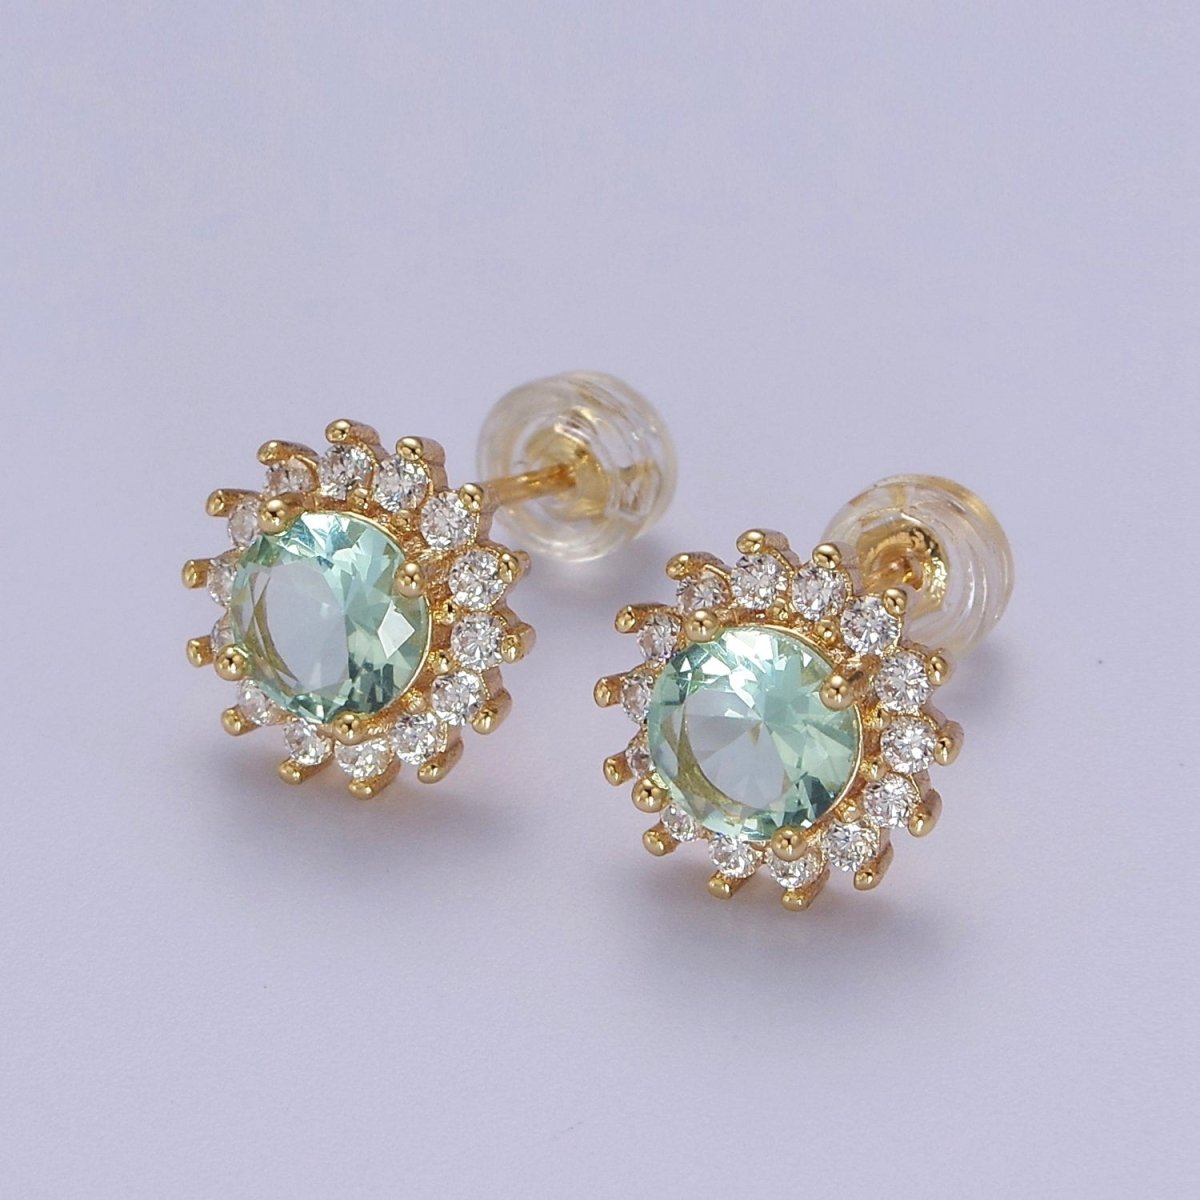 Tiny Zirconia Studs, Dainty Gold Zirconia Earrings, Cz Stud Earrings, Sun Earrings, Tiny Diamond Stud Earrings, Small Gold Earring V-104 - DLUXCA